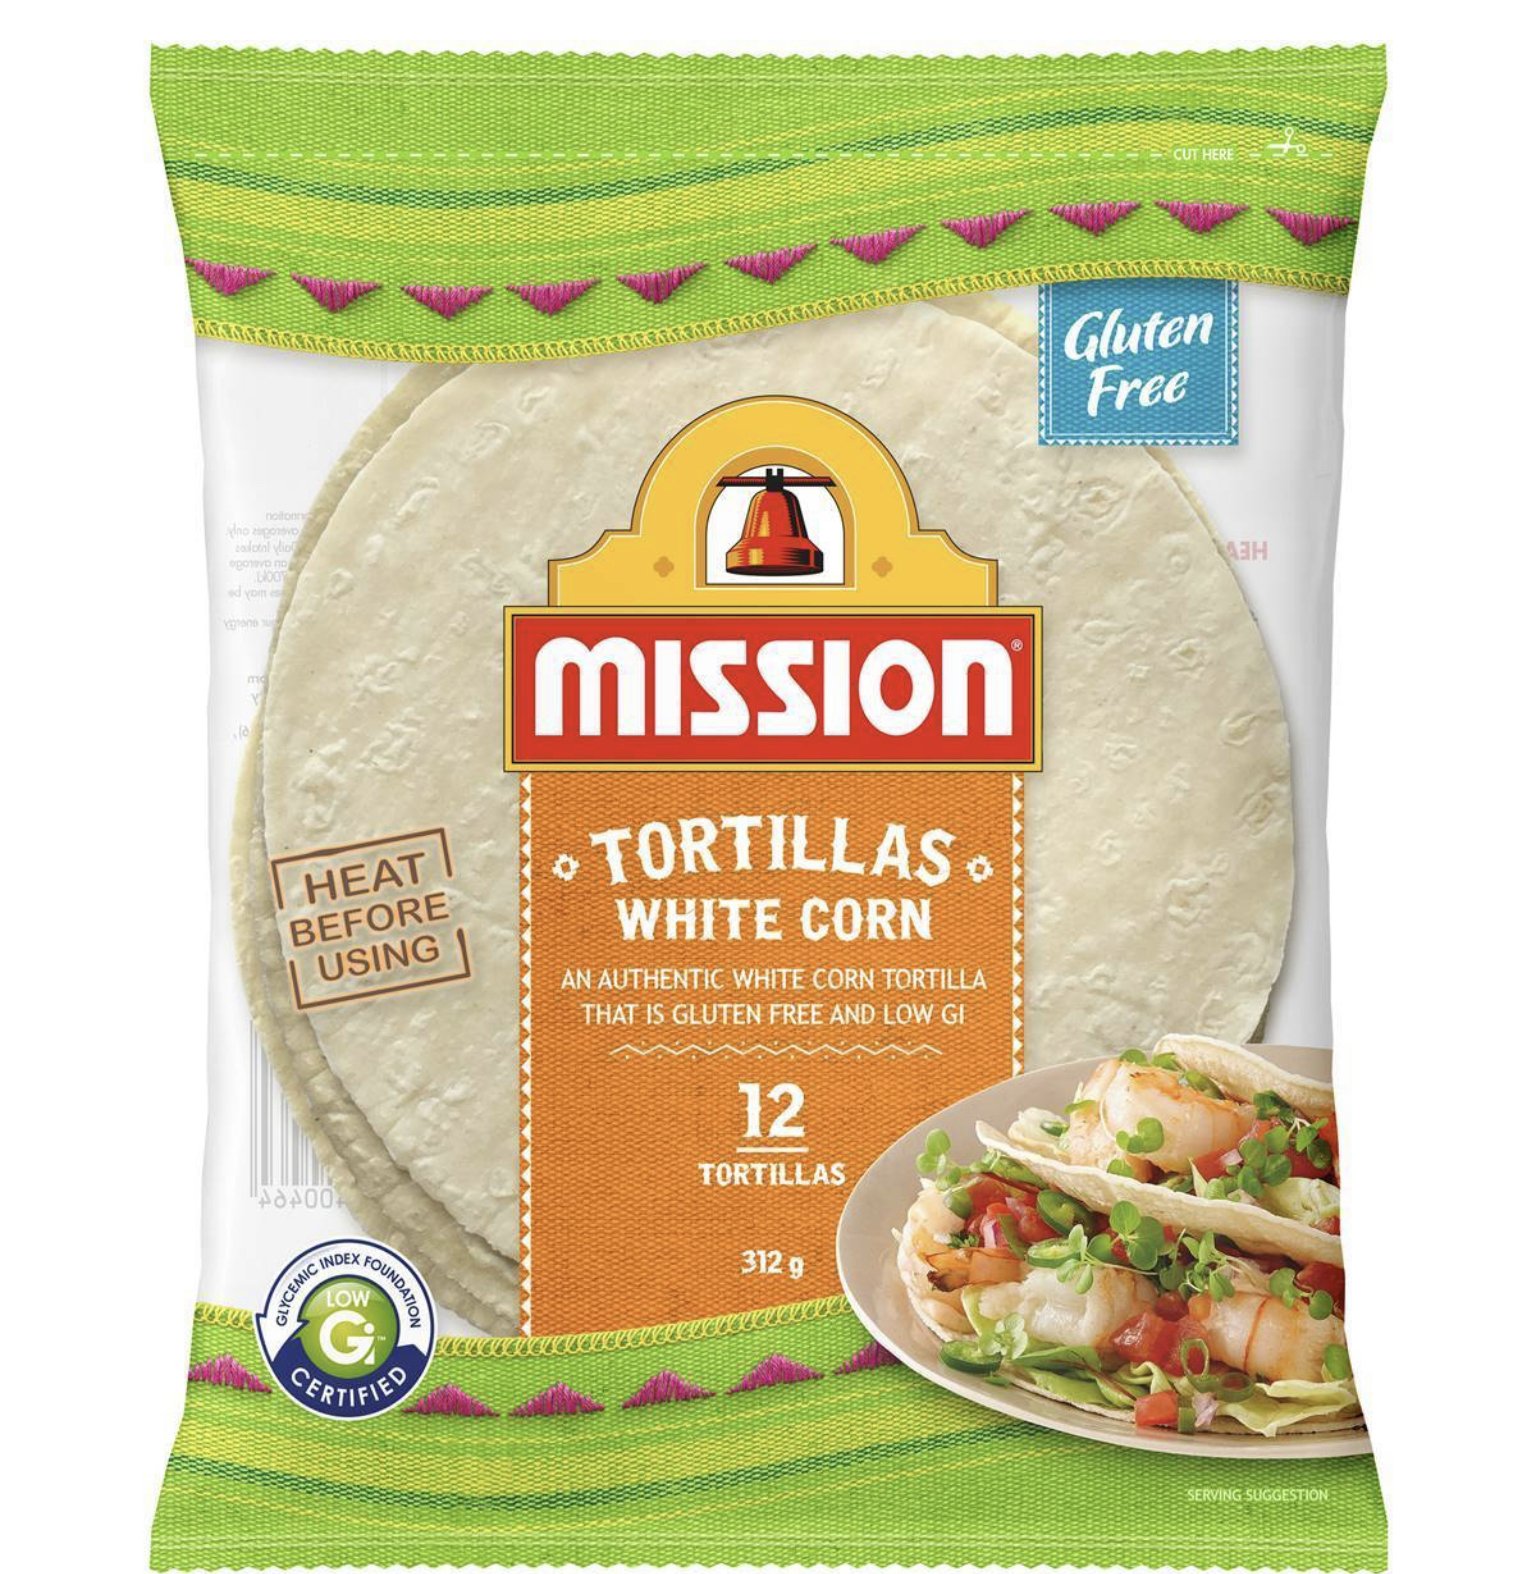 Mission White Corn Tortillas (12 Small) 312g